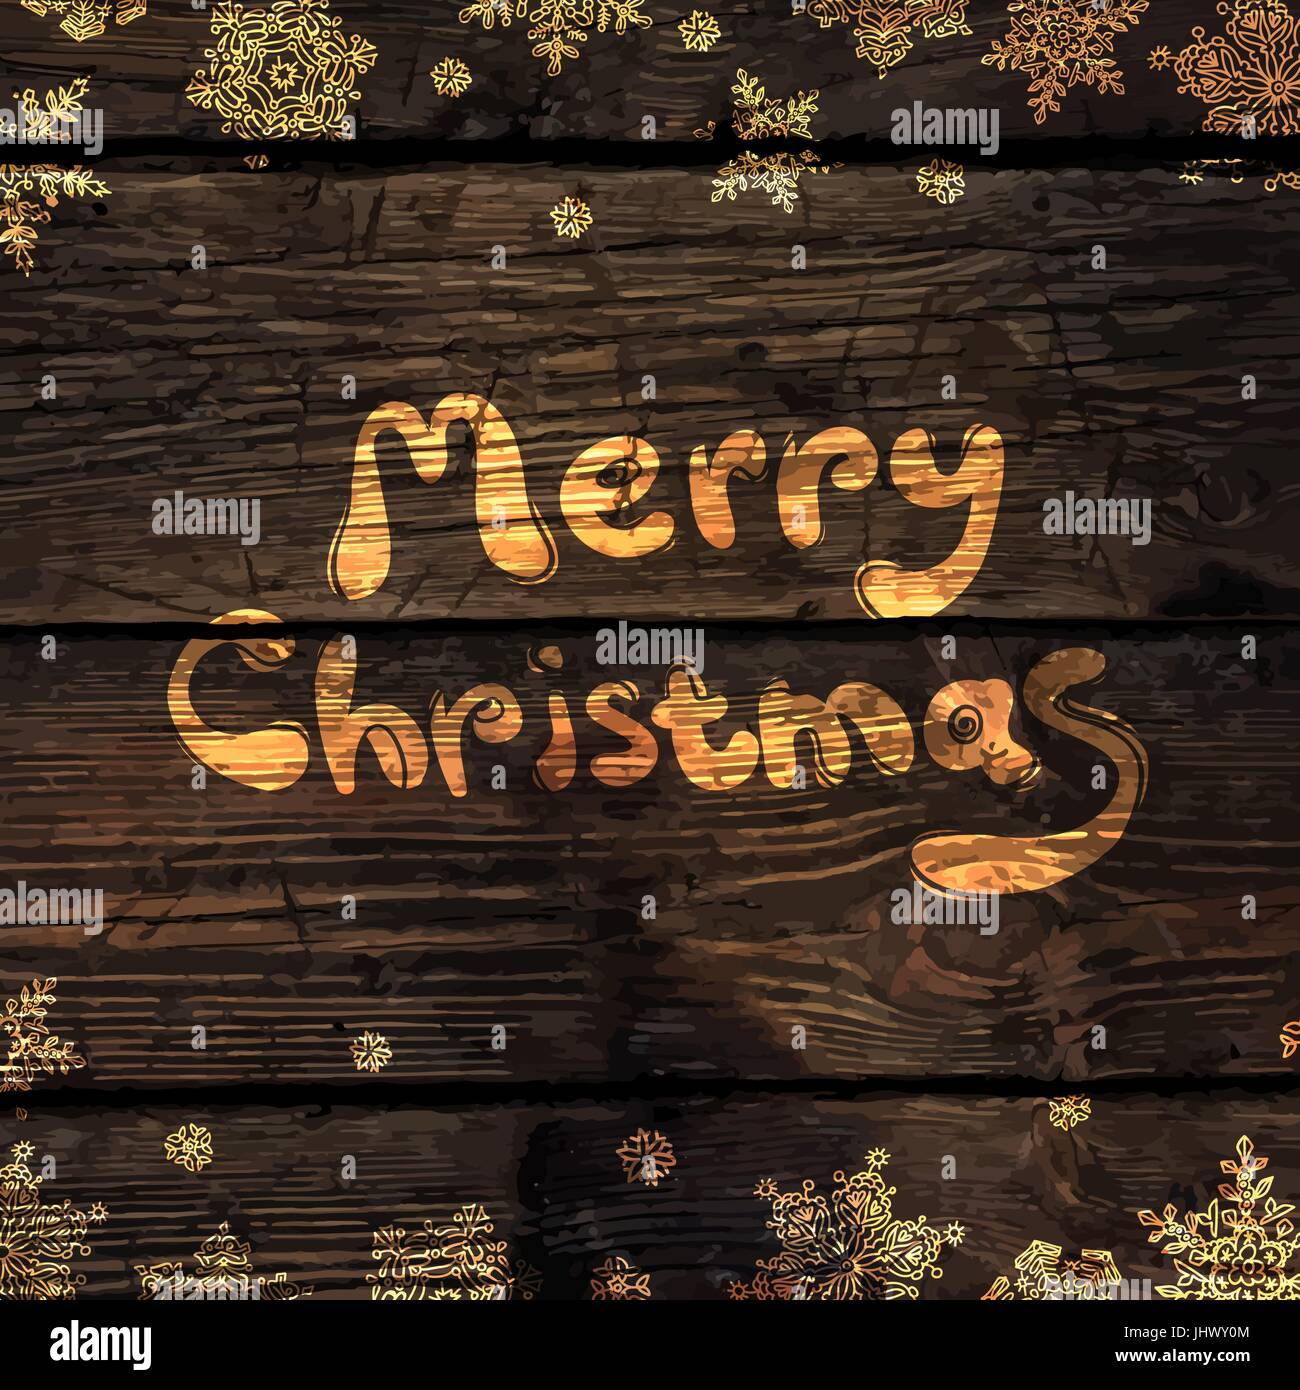 Weihnachtsgrußkarte mit glänzendem Gold Schneeflocken auf Holztextur abstrakten Hintergrund. Vektor-illustration Stock Vektor